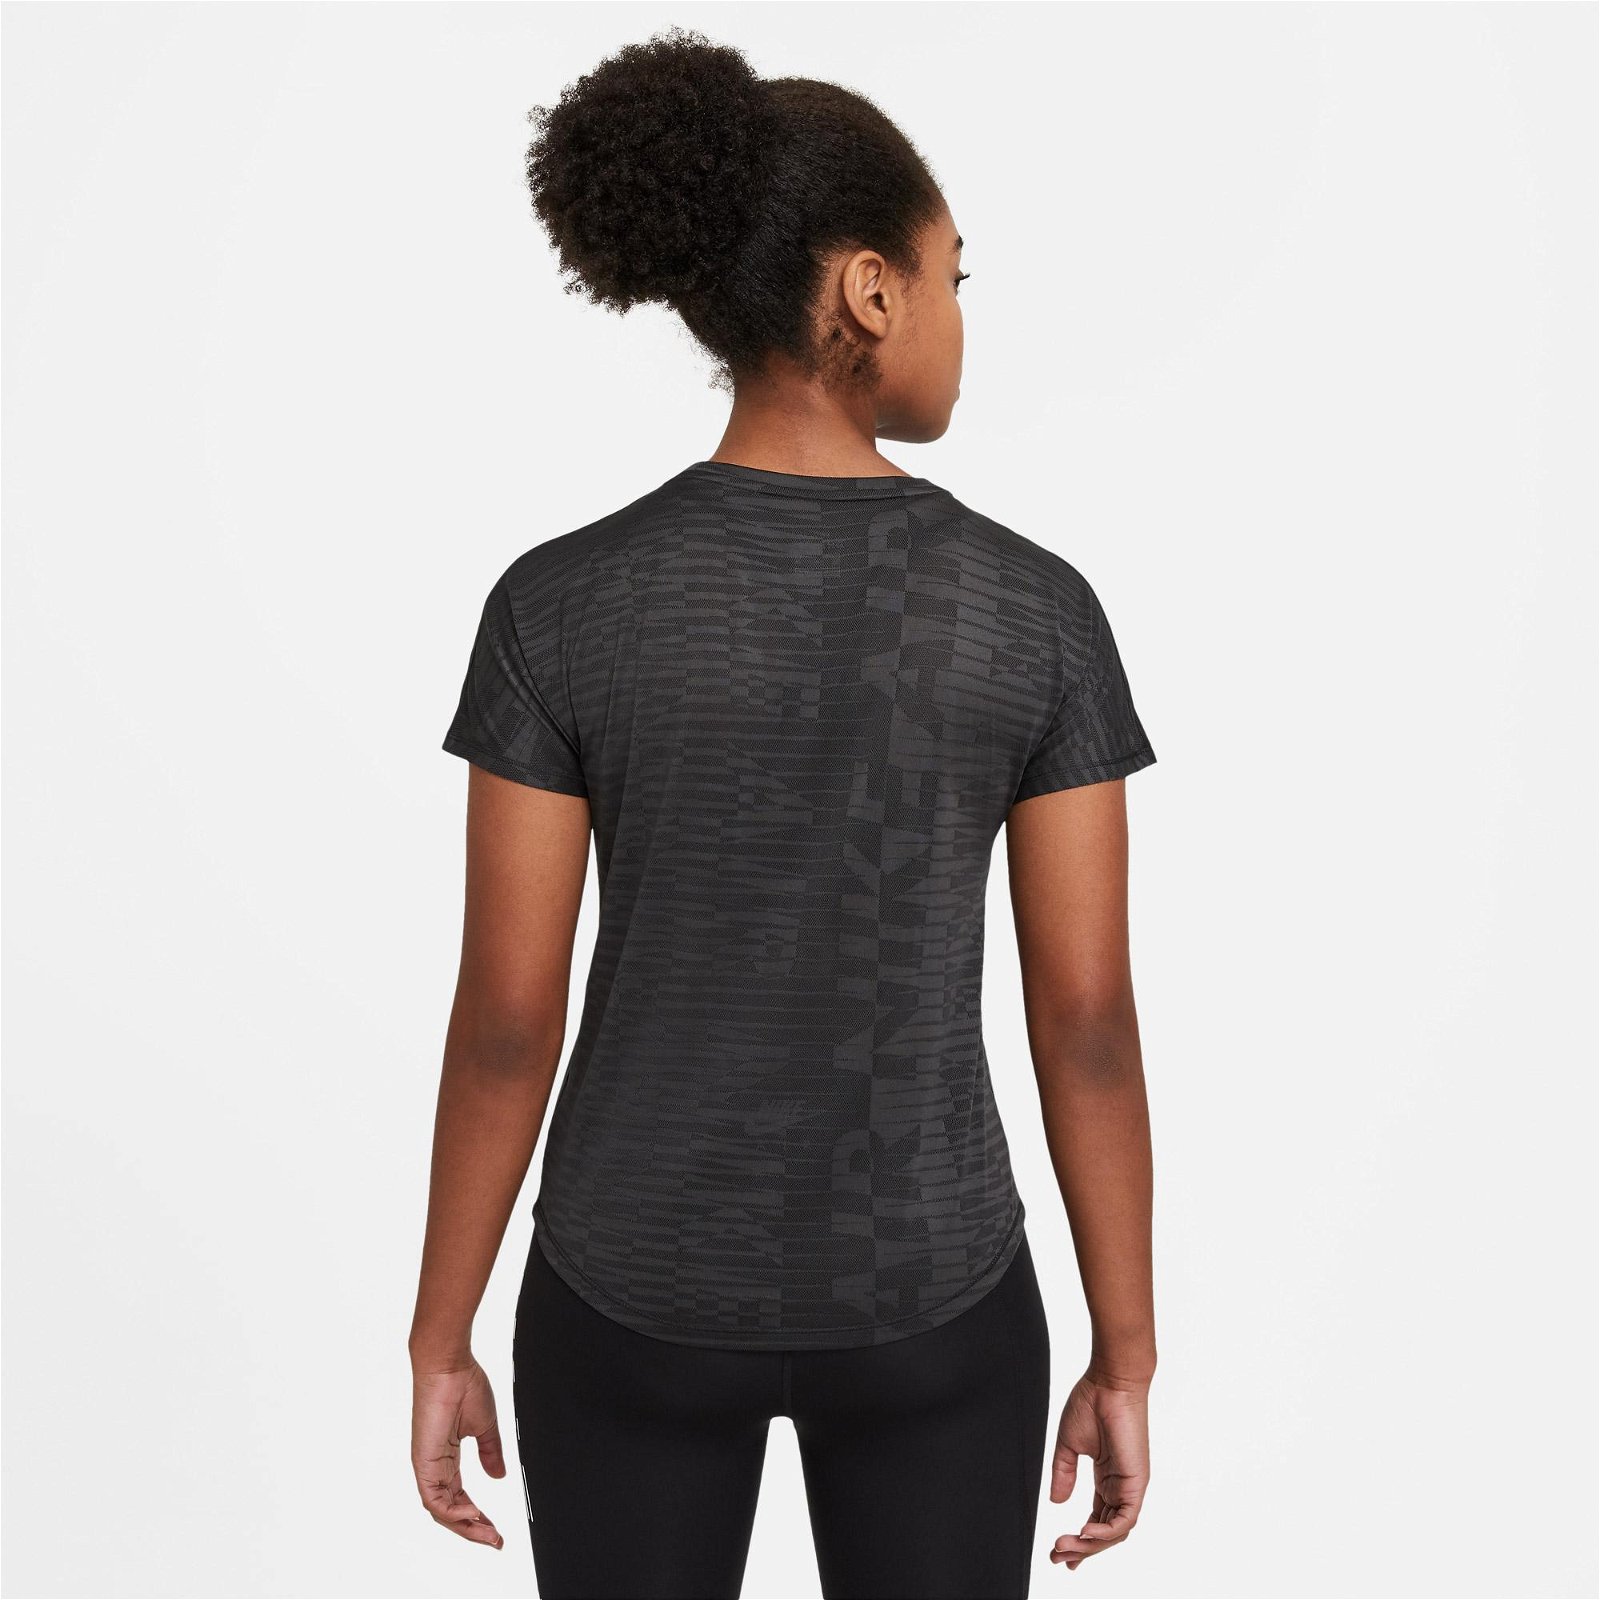 Nike Air Kadın Siyah T-Shirt